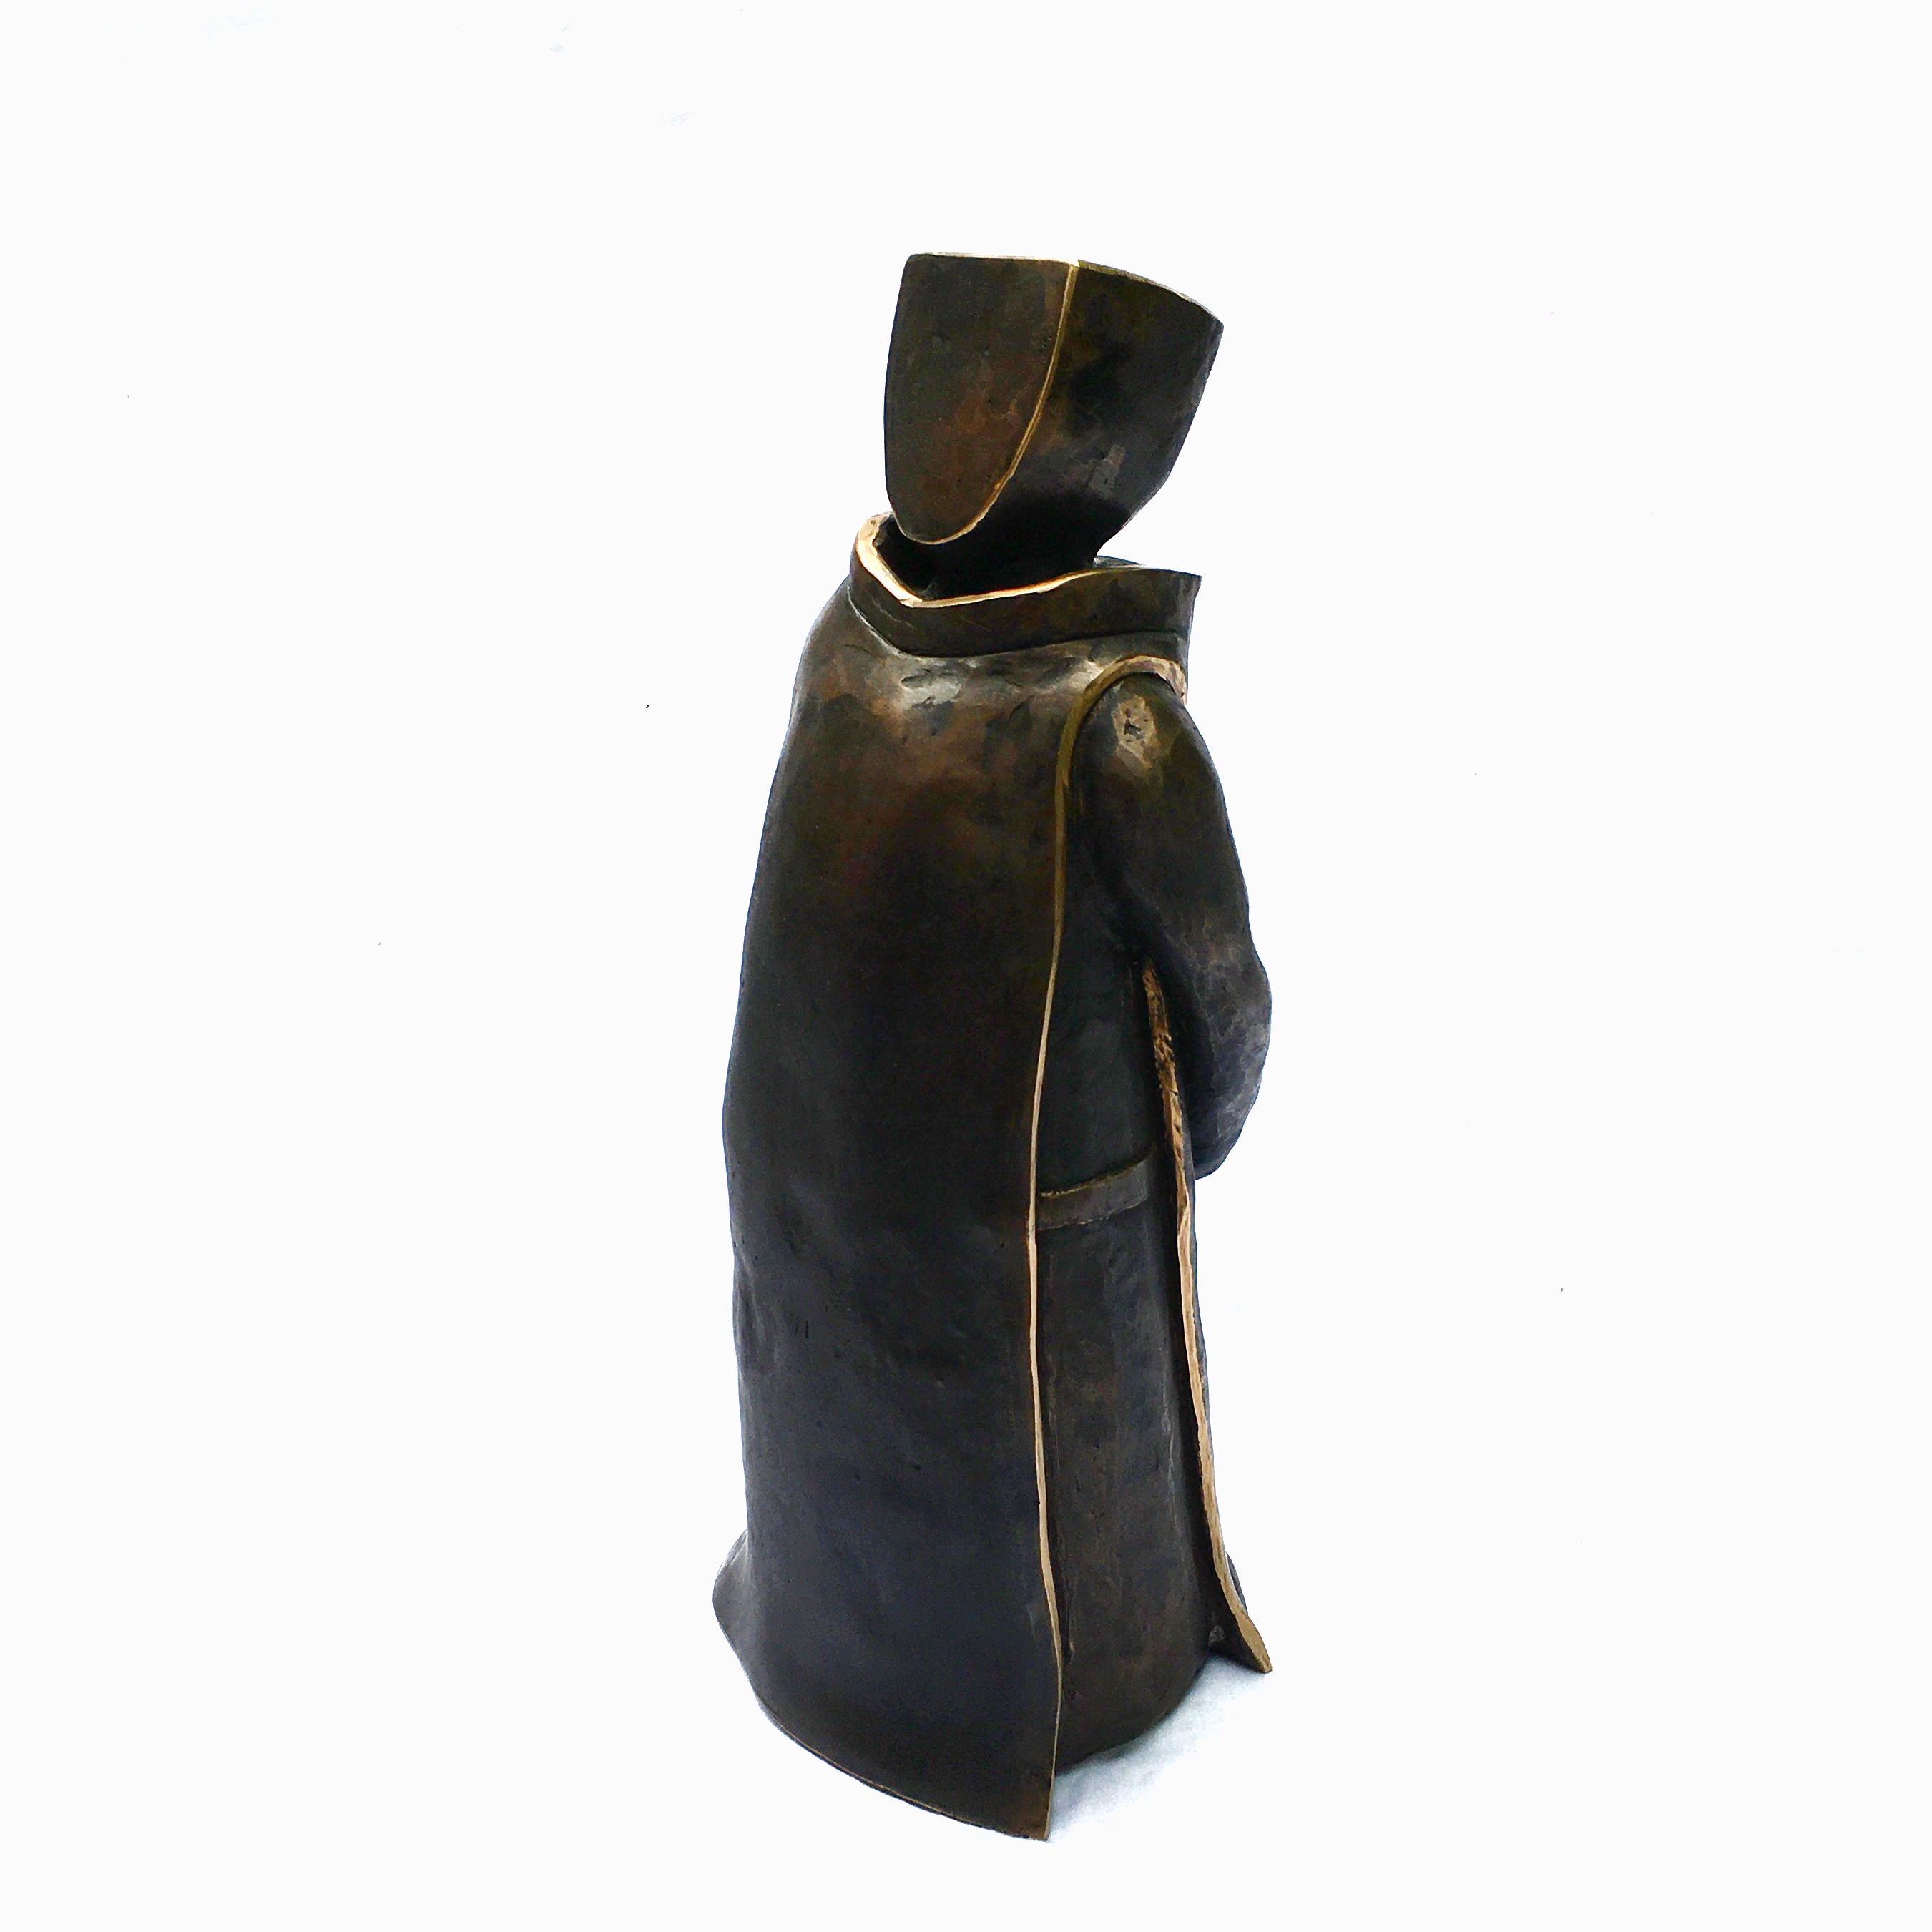 Benediktiner 1 Serie KörperHaltungen III 2020 Bronze 36 x  14 x  12 cm